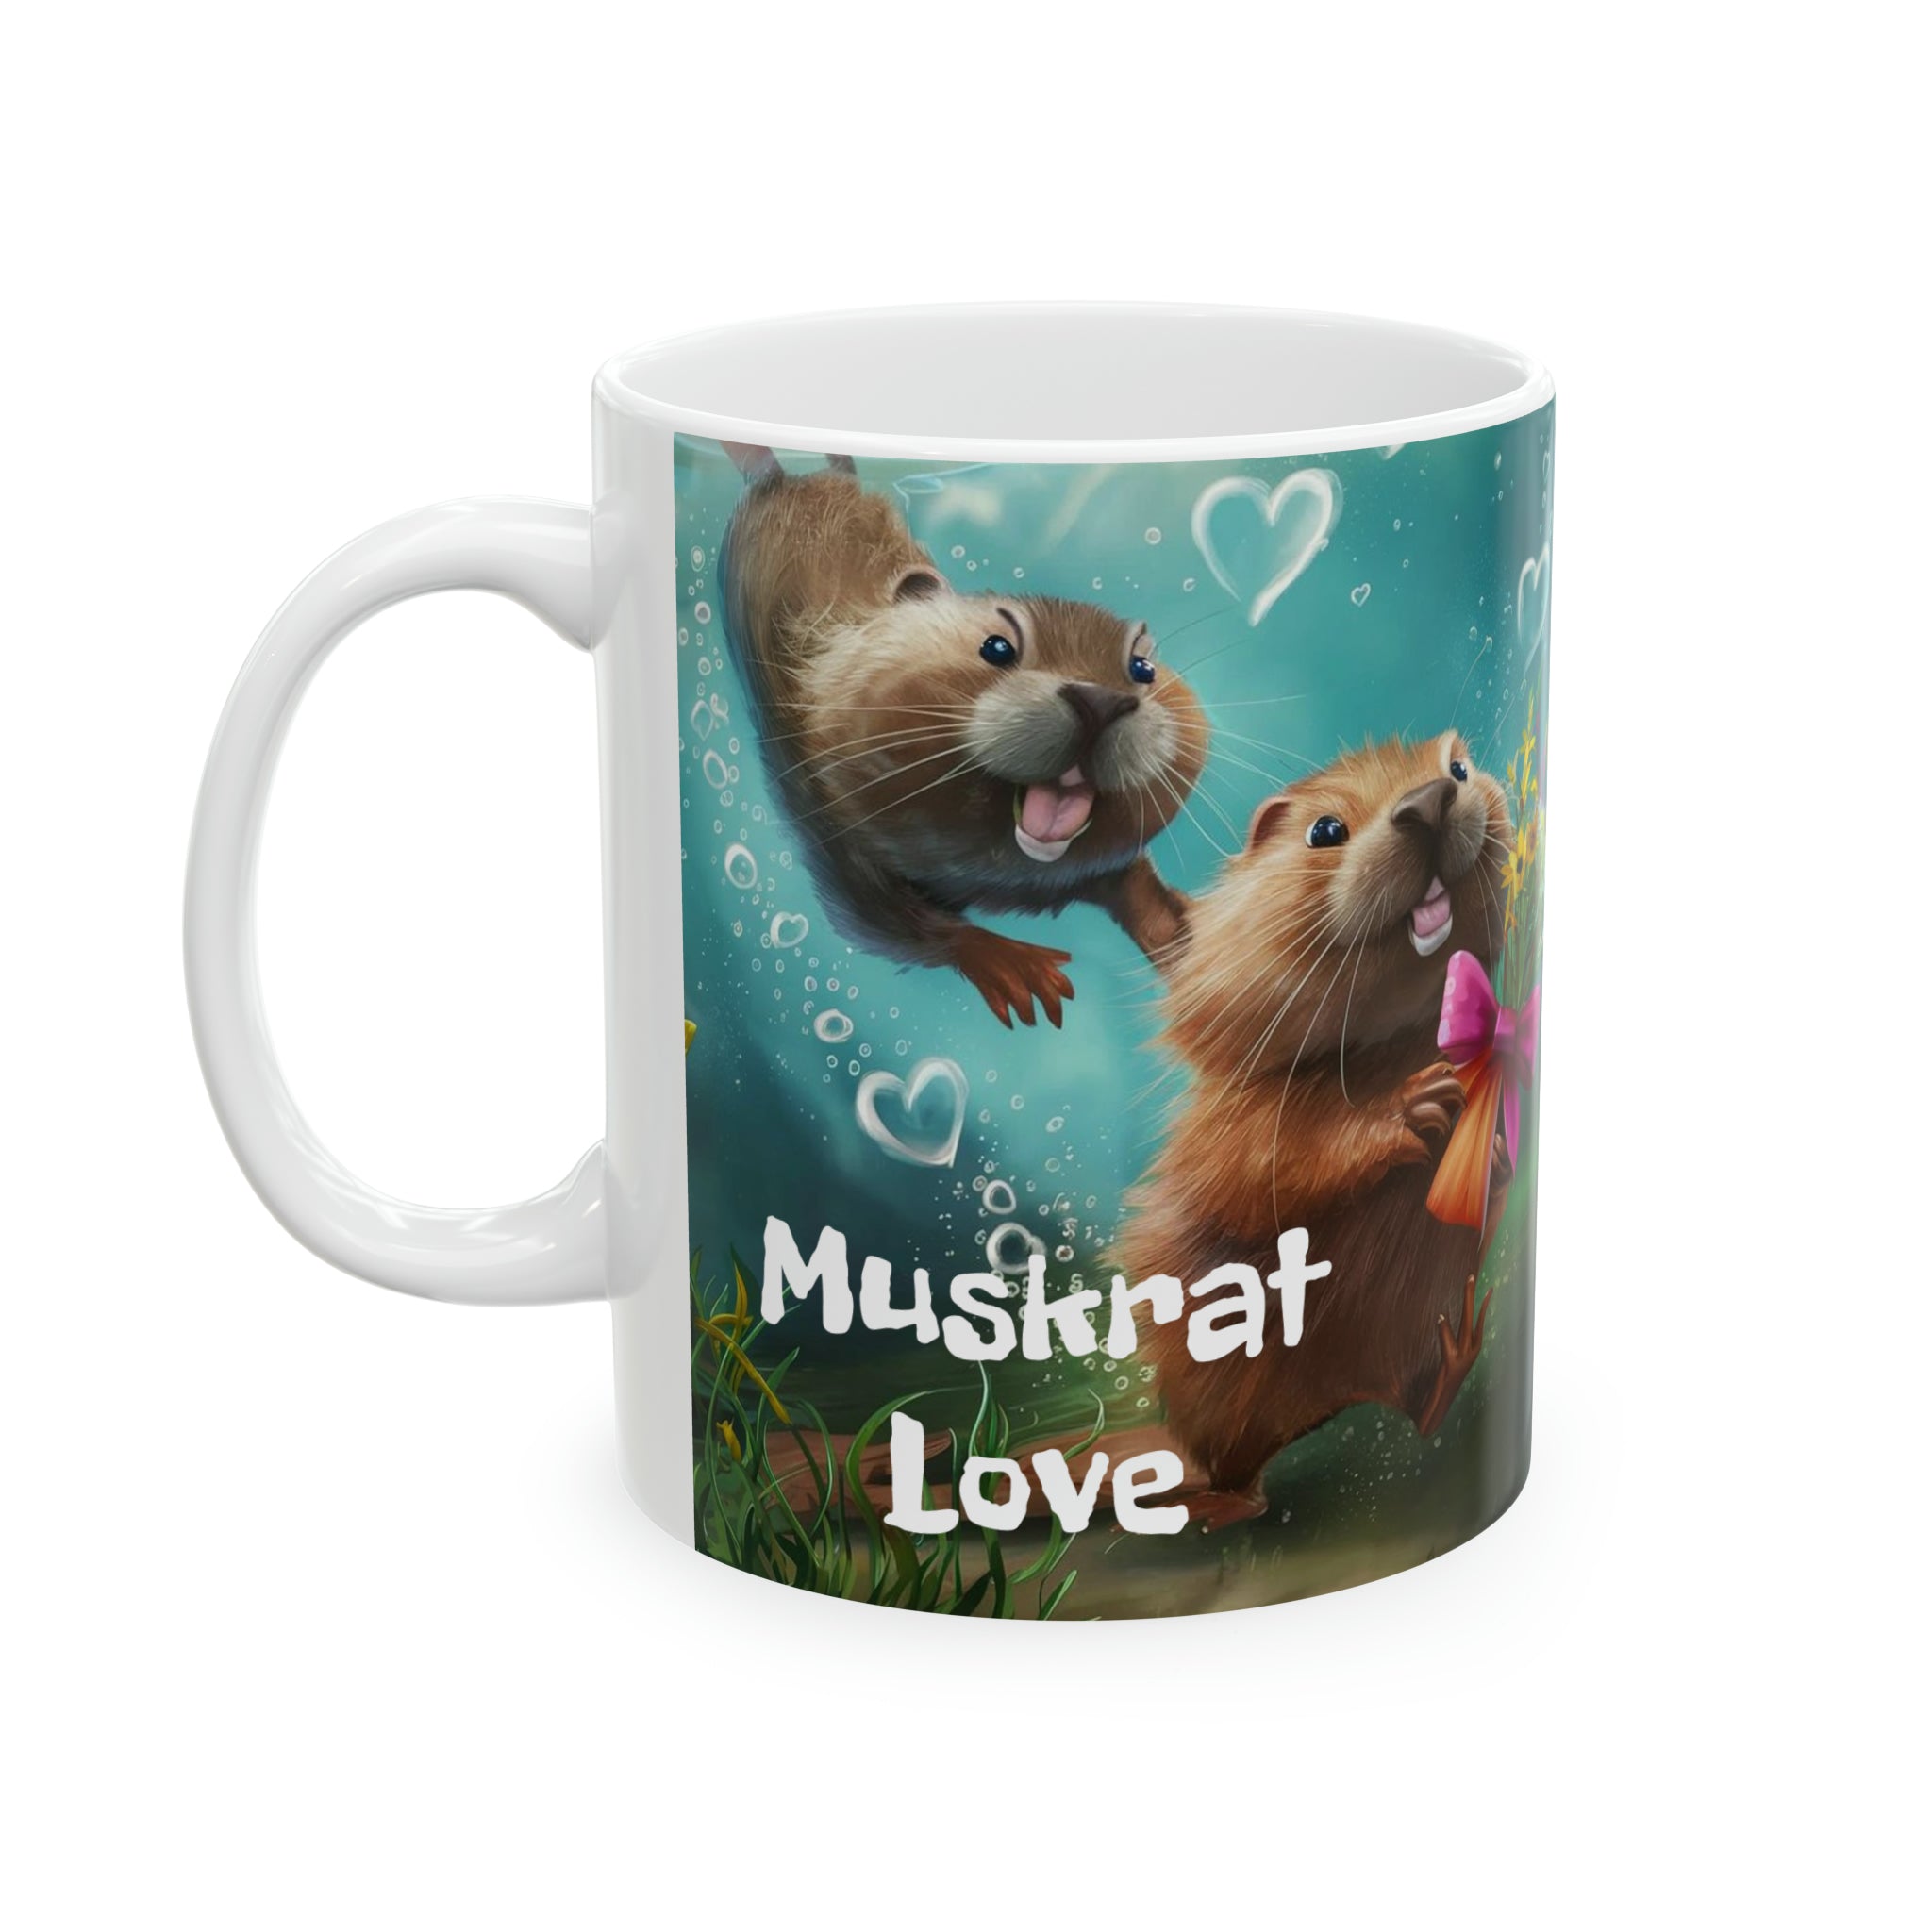 Muskrat Love - Ceramic Mug, 11oz